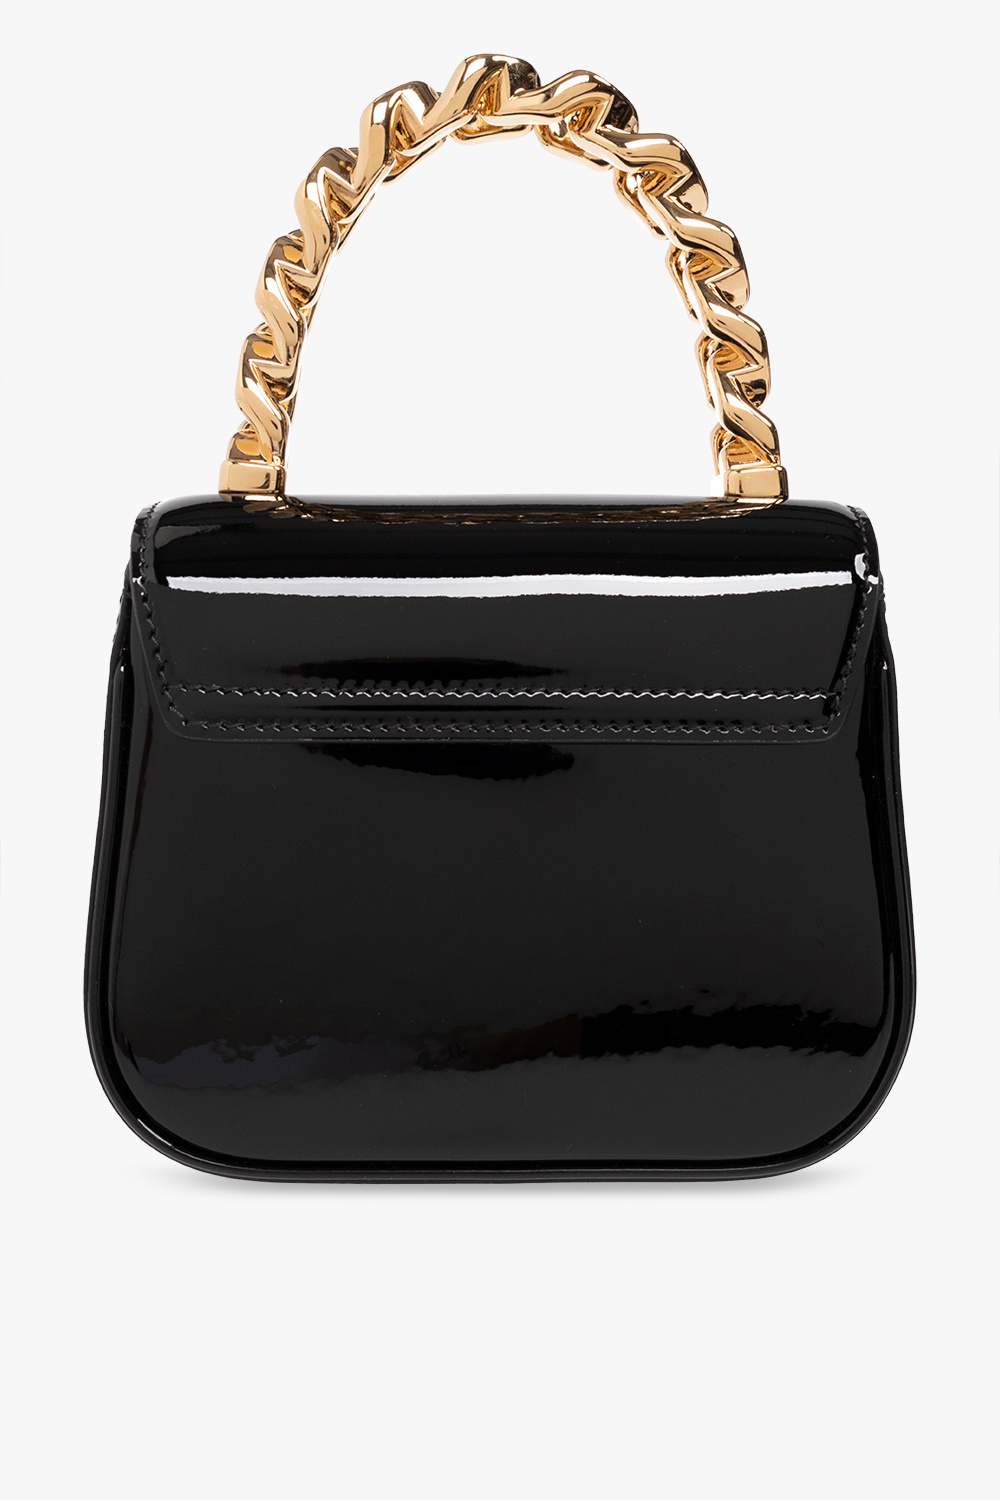 Versace - Authenticated La Medusa Handbag - Leather Black Plain for Women, Never Worn